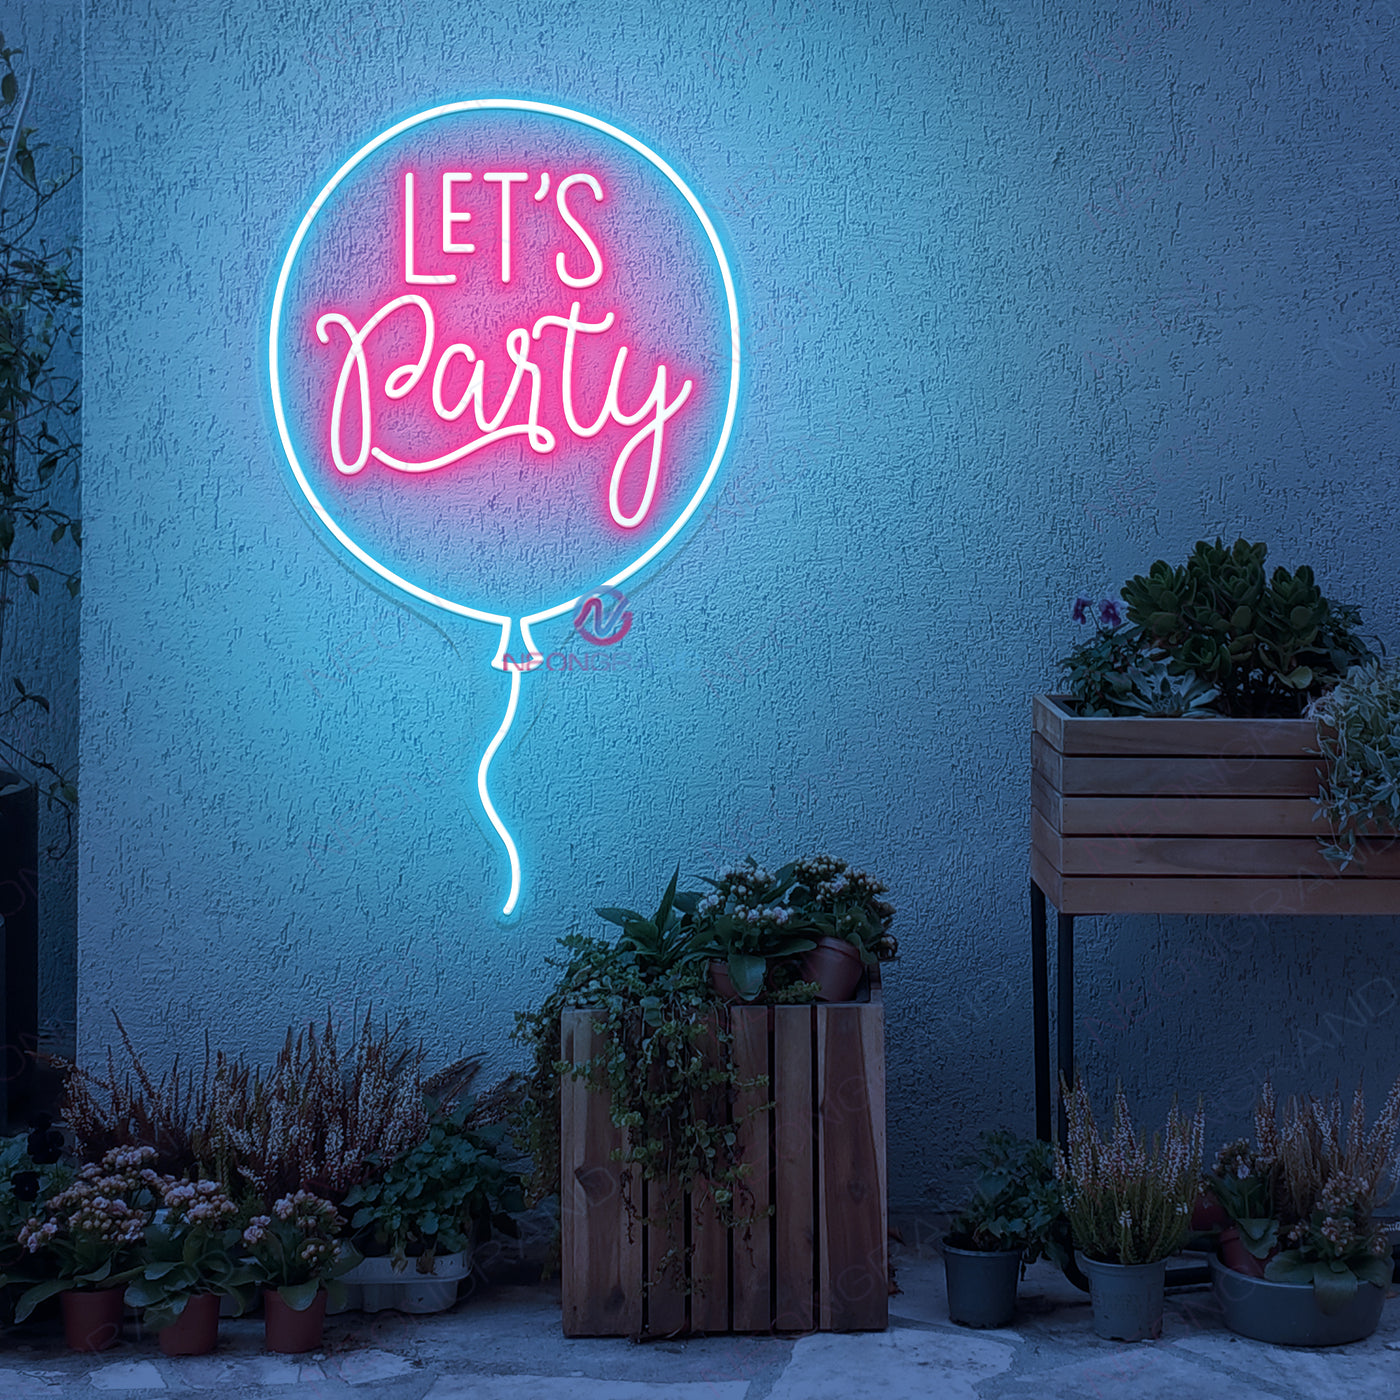 Bubble Let's Party Neon Sign Led Light